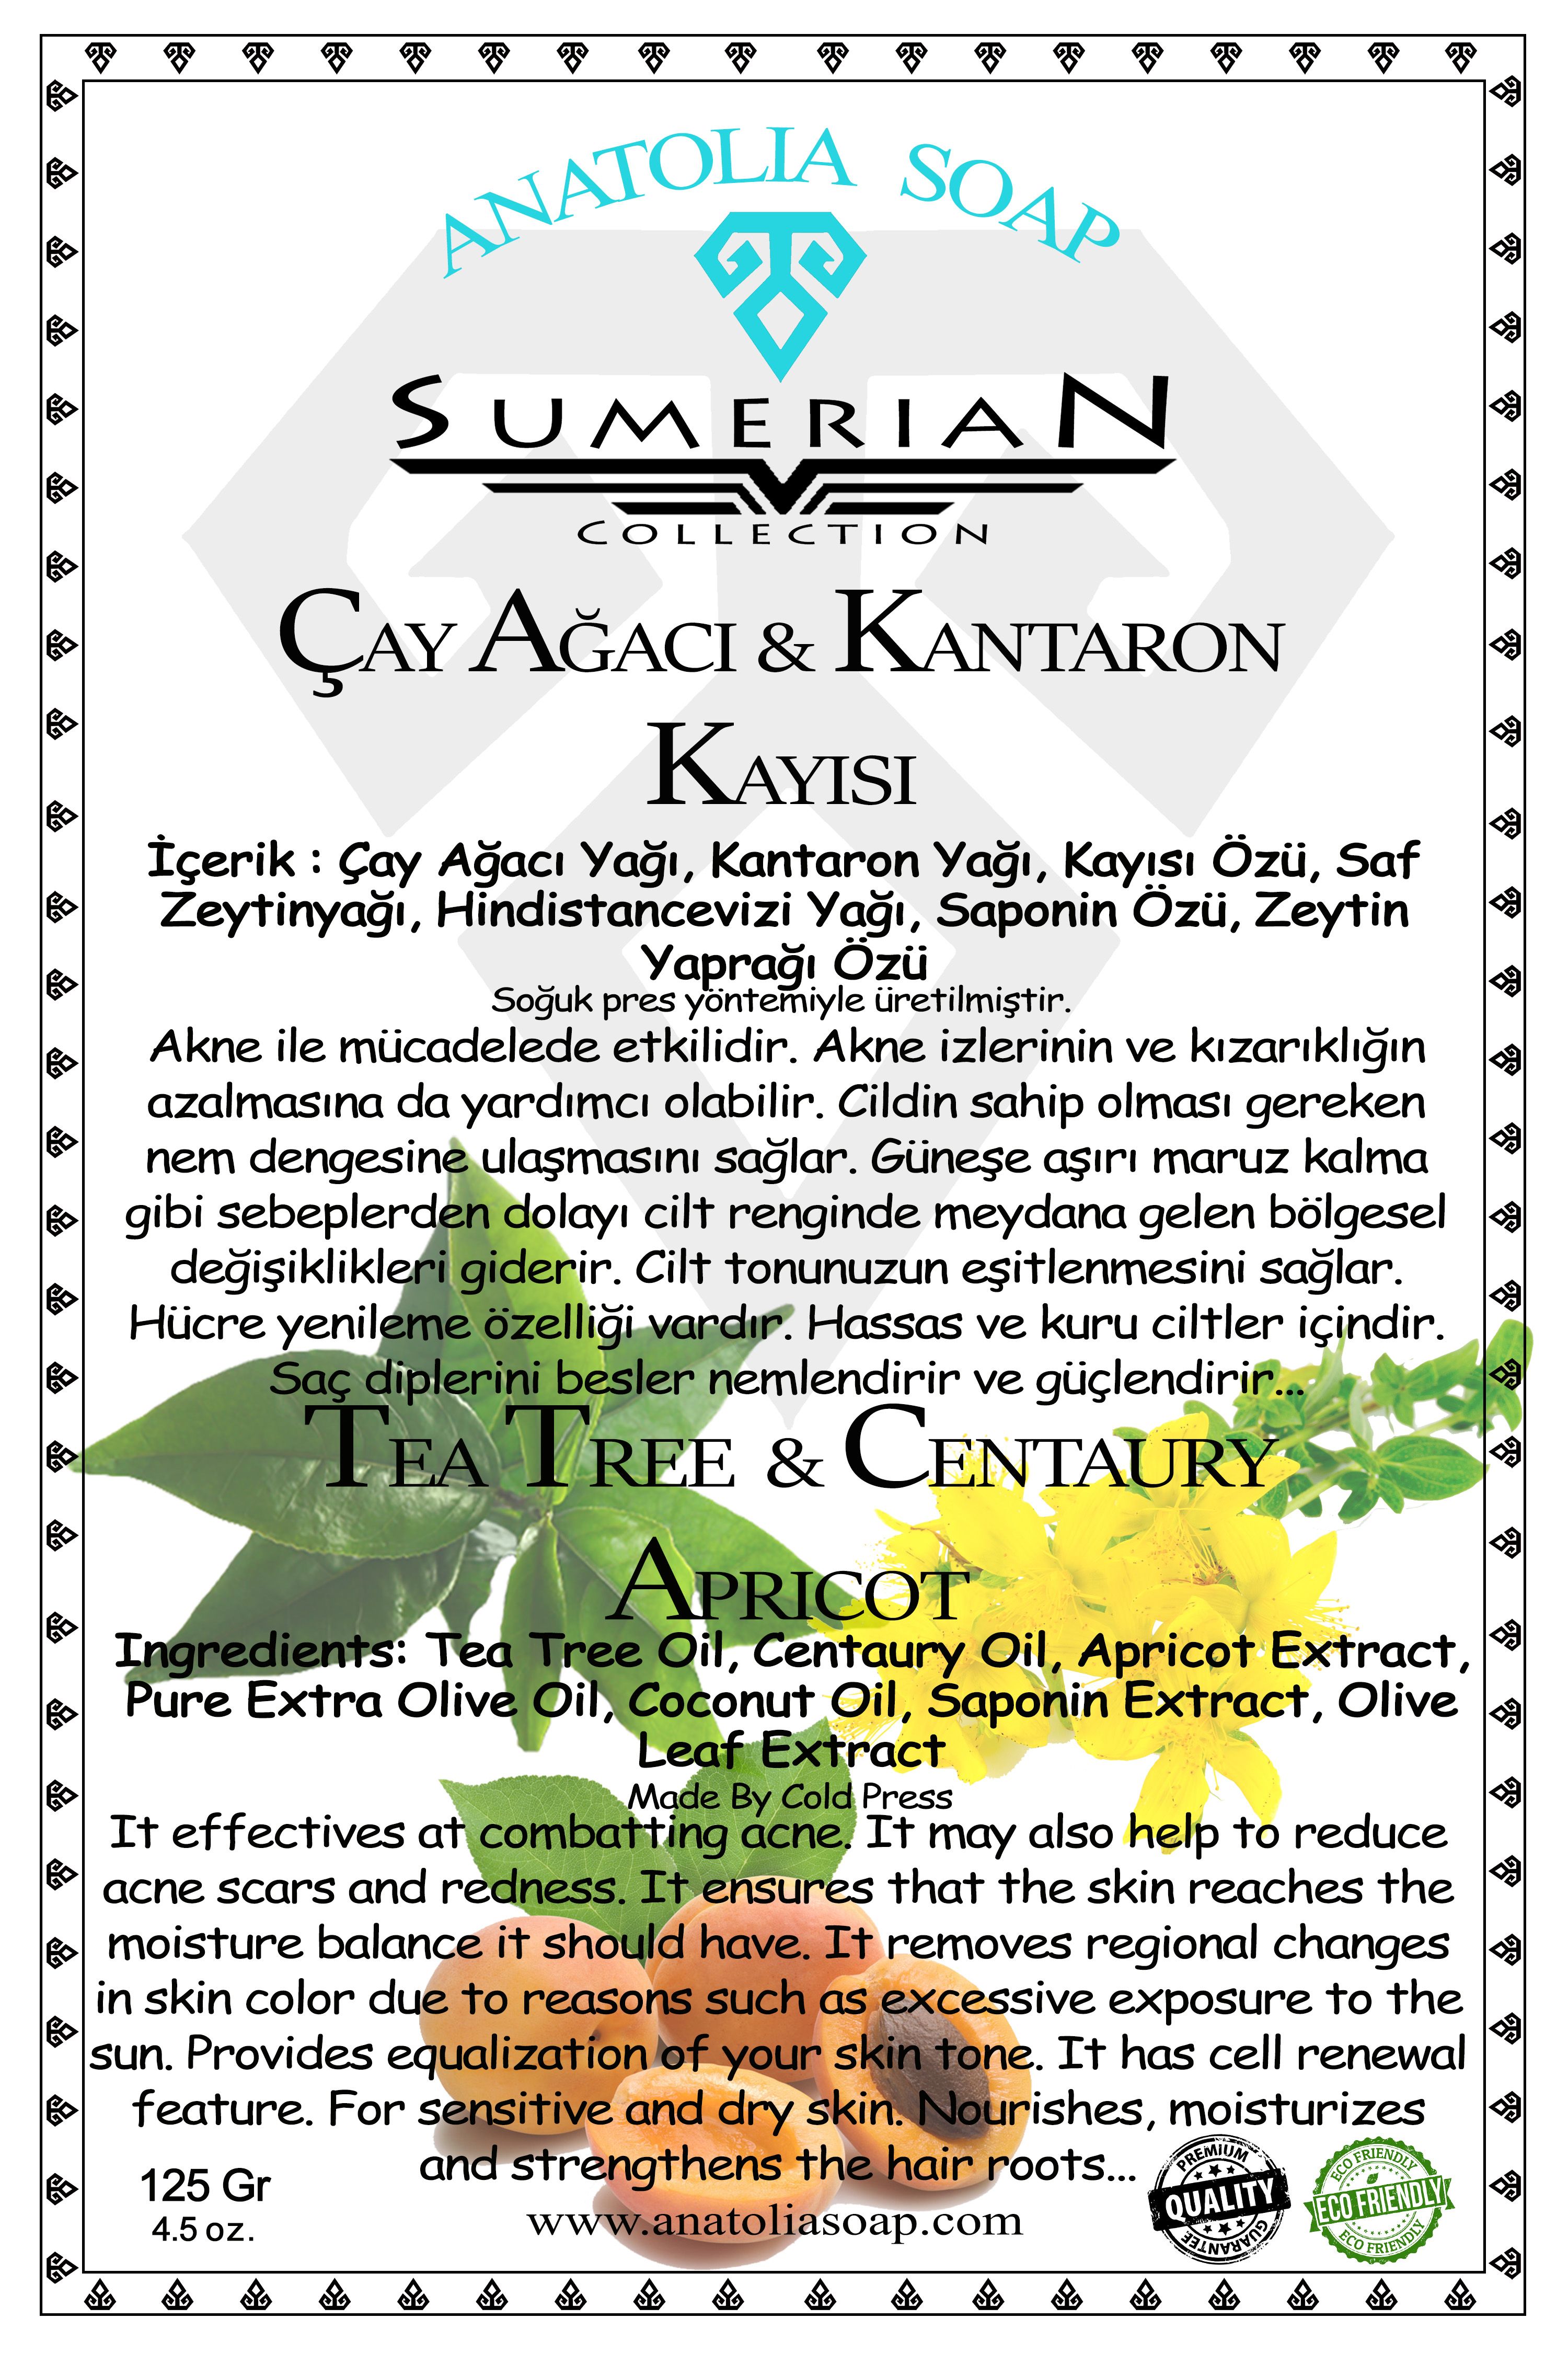 Sumerian Koleksiyonu Çay Ağacı Sarı Kantoron Kayısı Sabunu ile Ciltteki Bölgesel Renk Farklılıklarını Giderin.